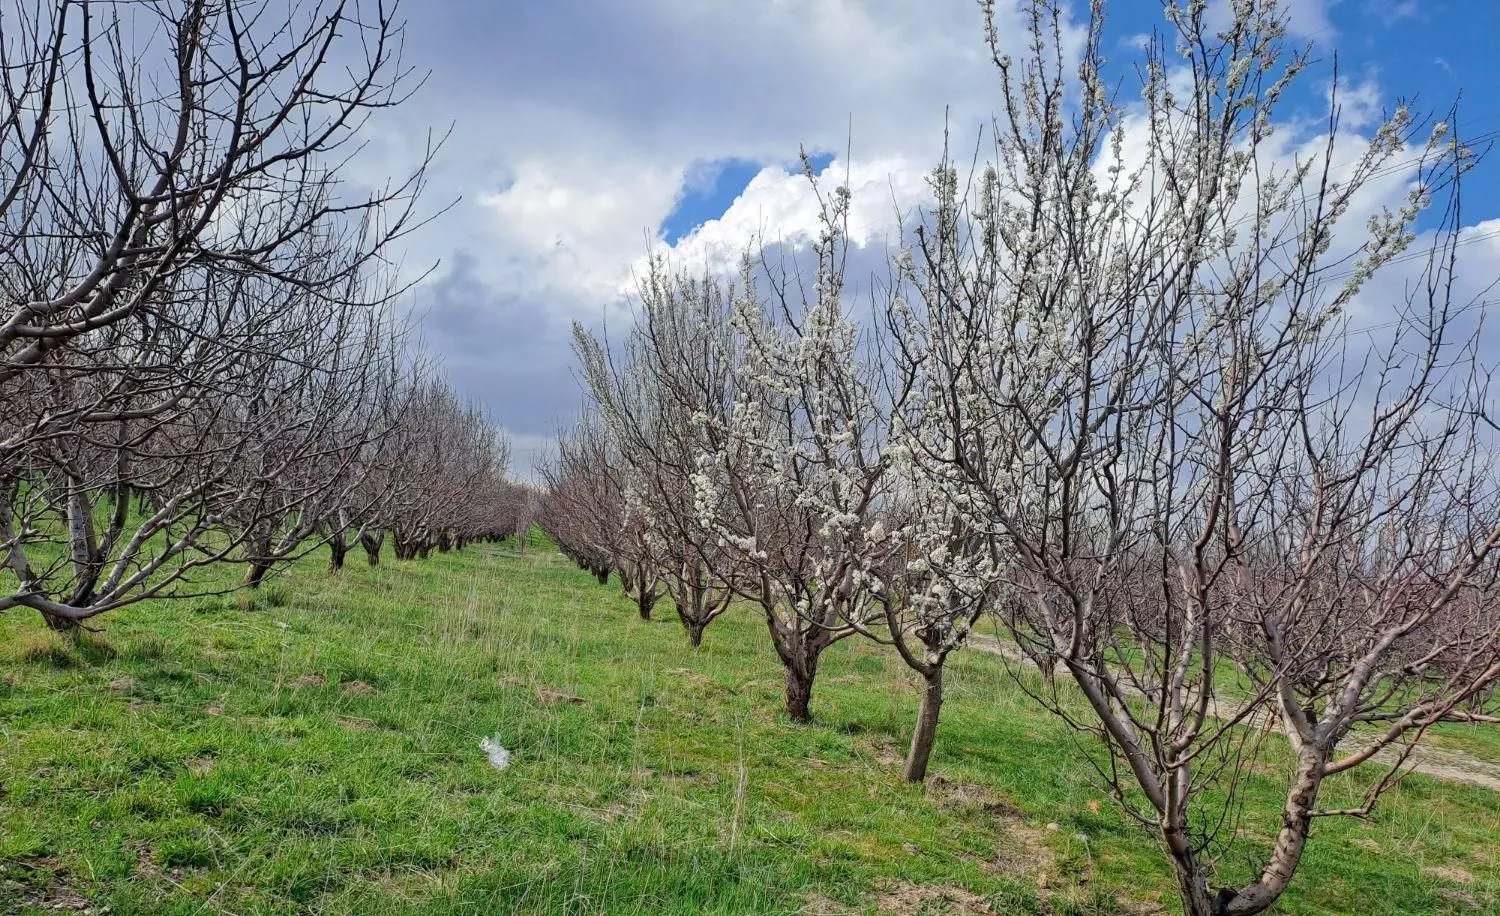 فروش یک باغ سیب بادرختهای ۲۰ساله جوان پربار